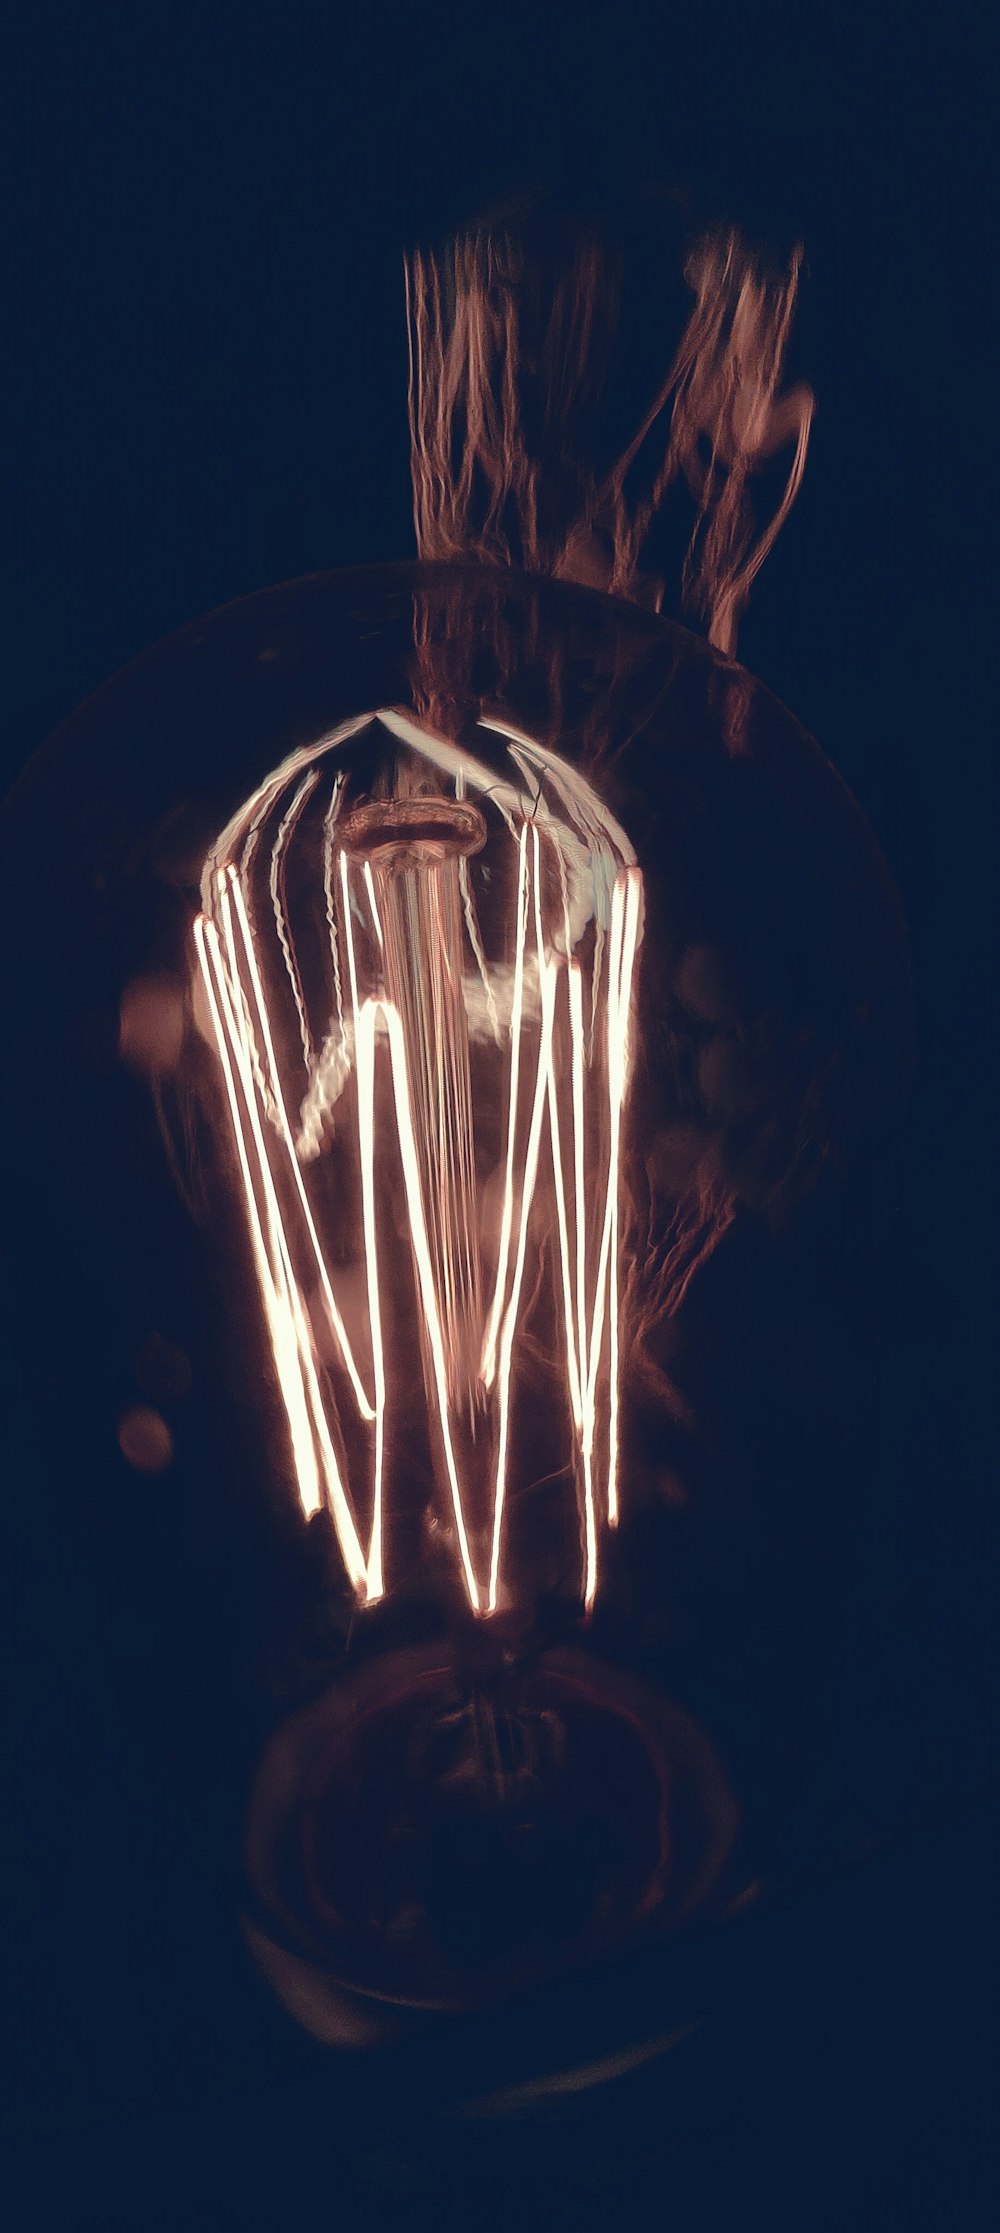 Una foto sfocata di una lampadina al buio